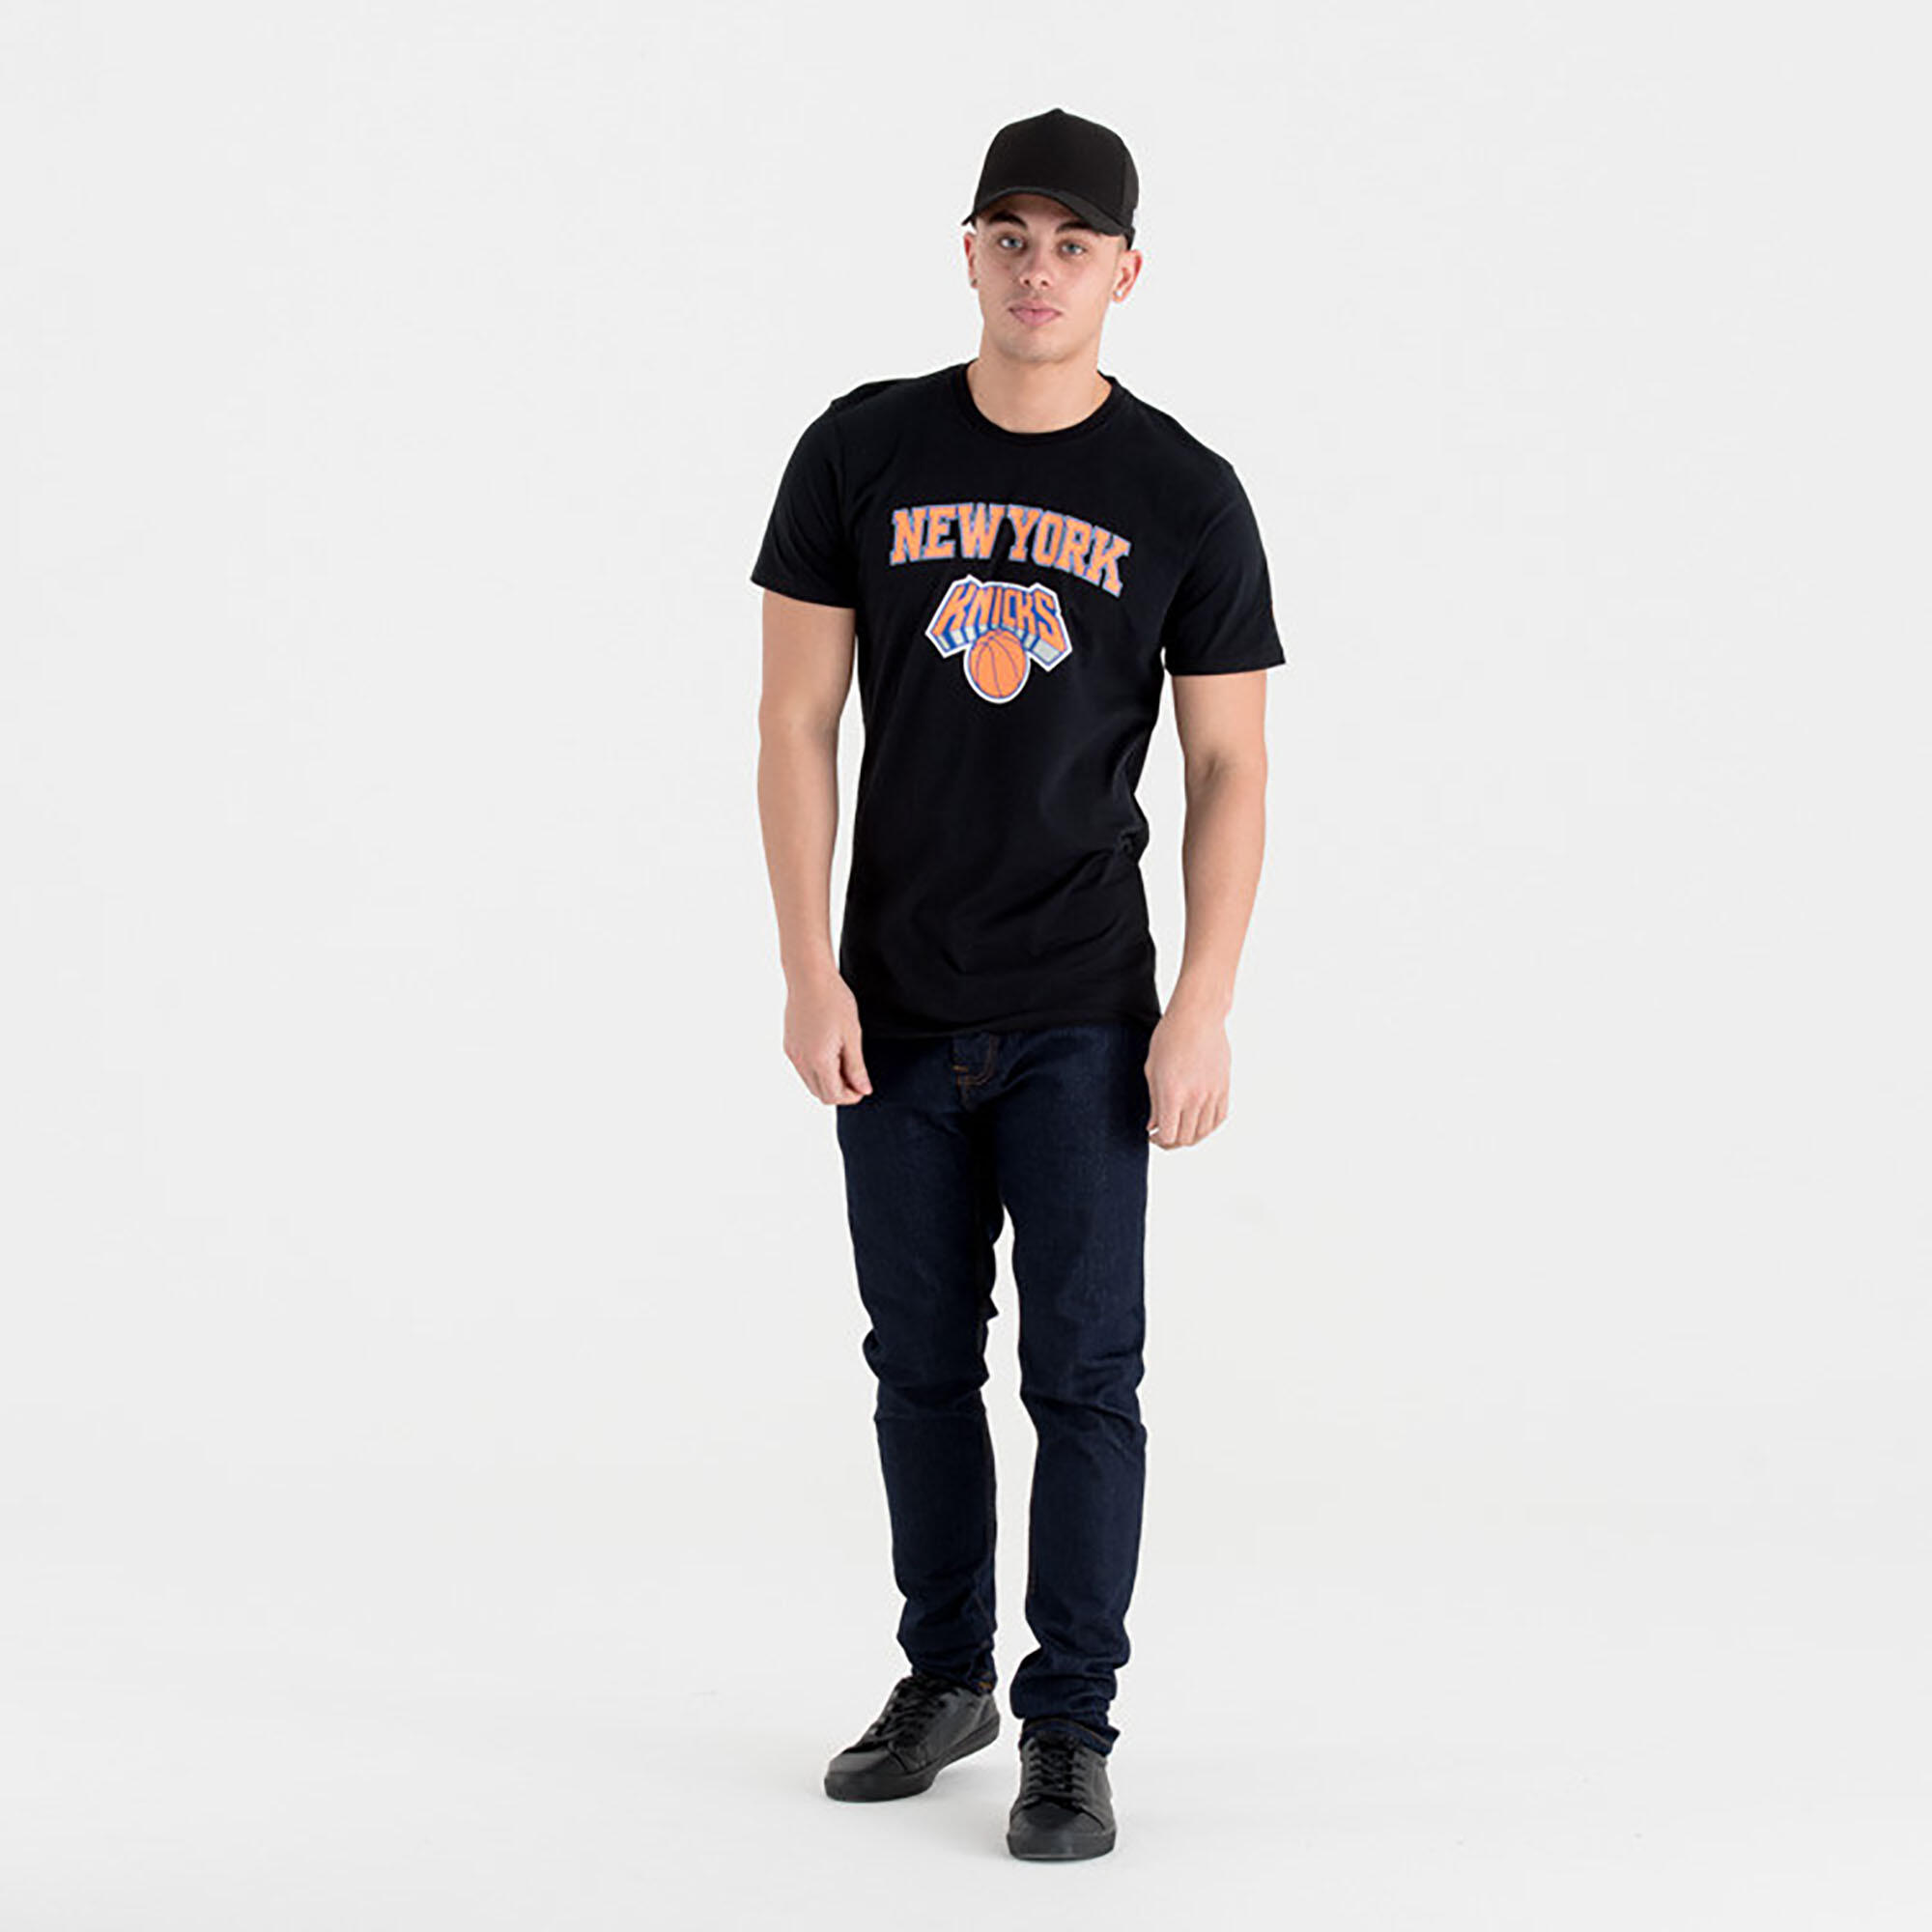 Men's/Women's Short-Sleeved NBA T-Shirt - New York Knicks/Black